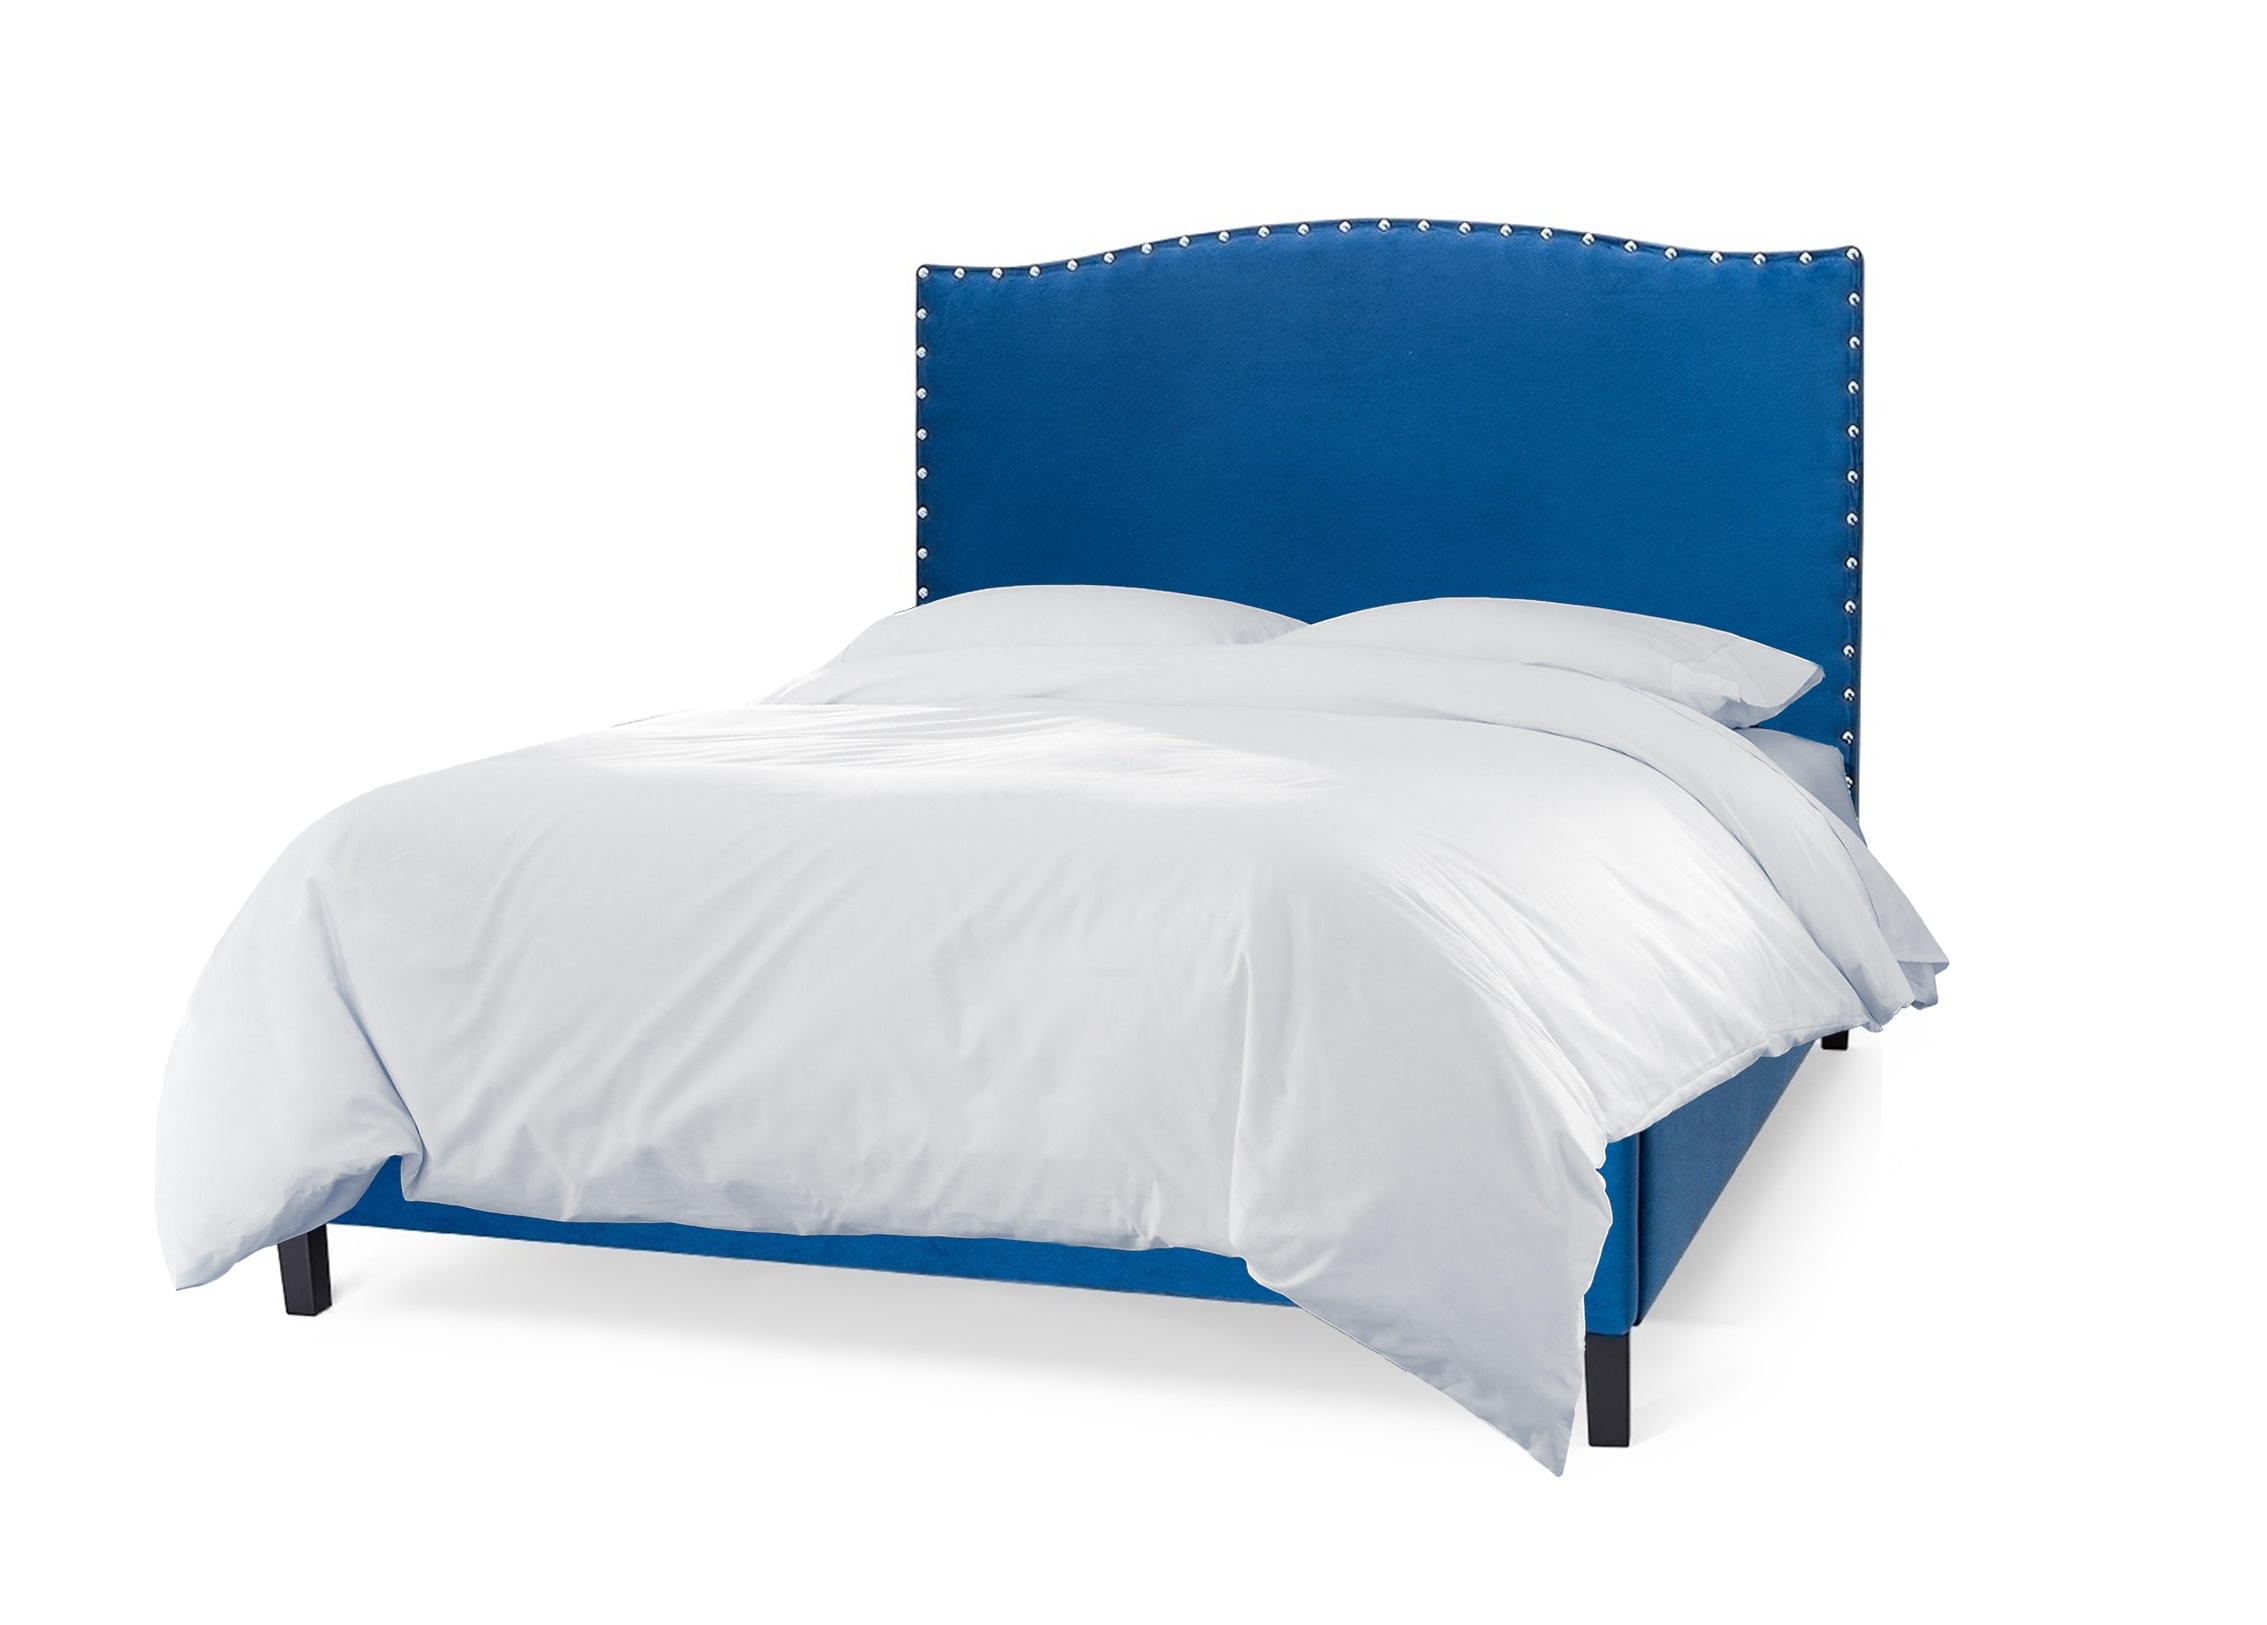 Мягкая кровать icon 140*200 (myfurnish) синий 156x130x212 см.